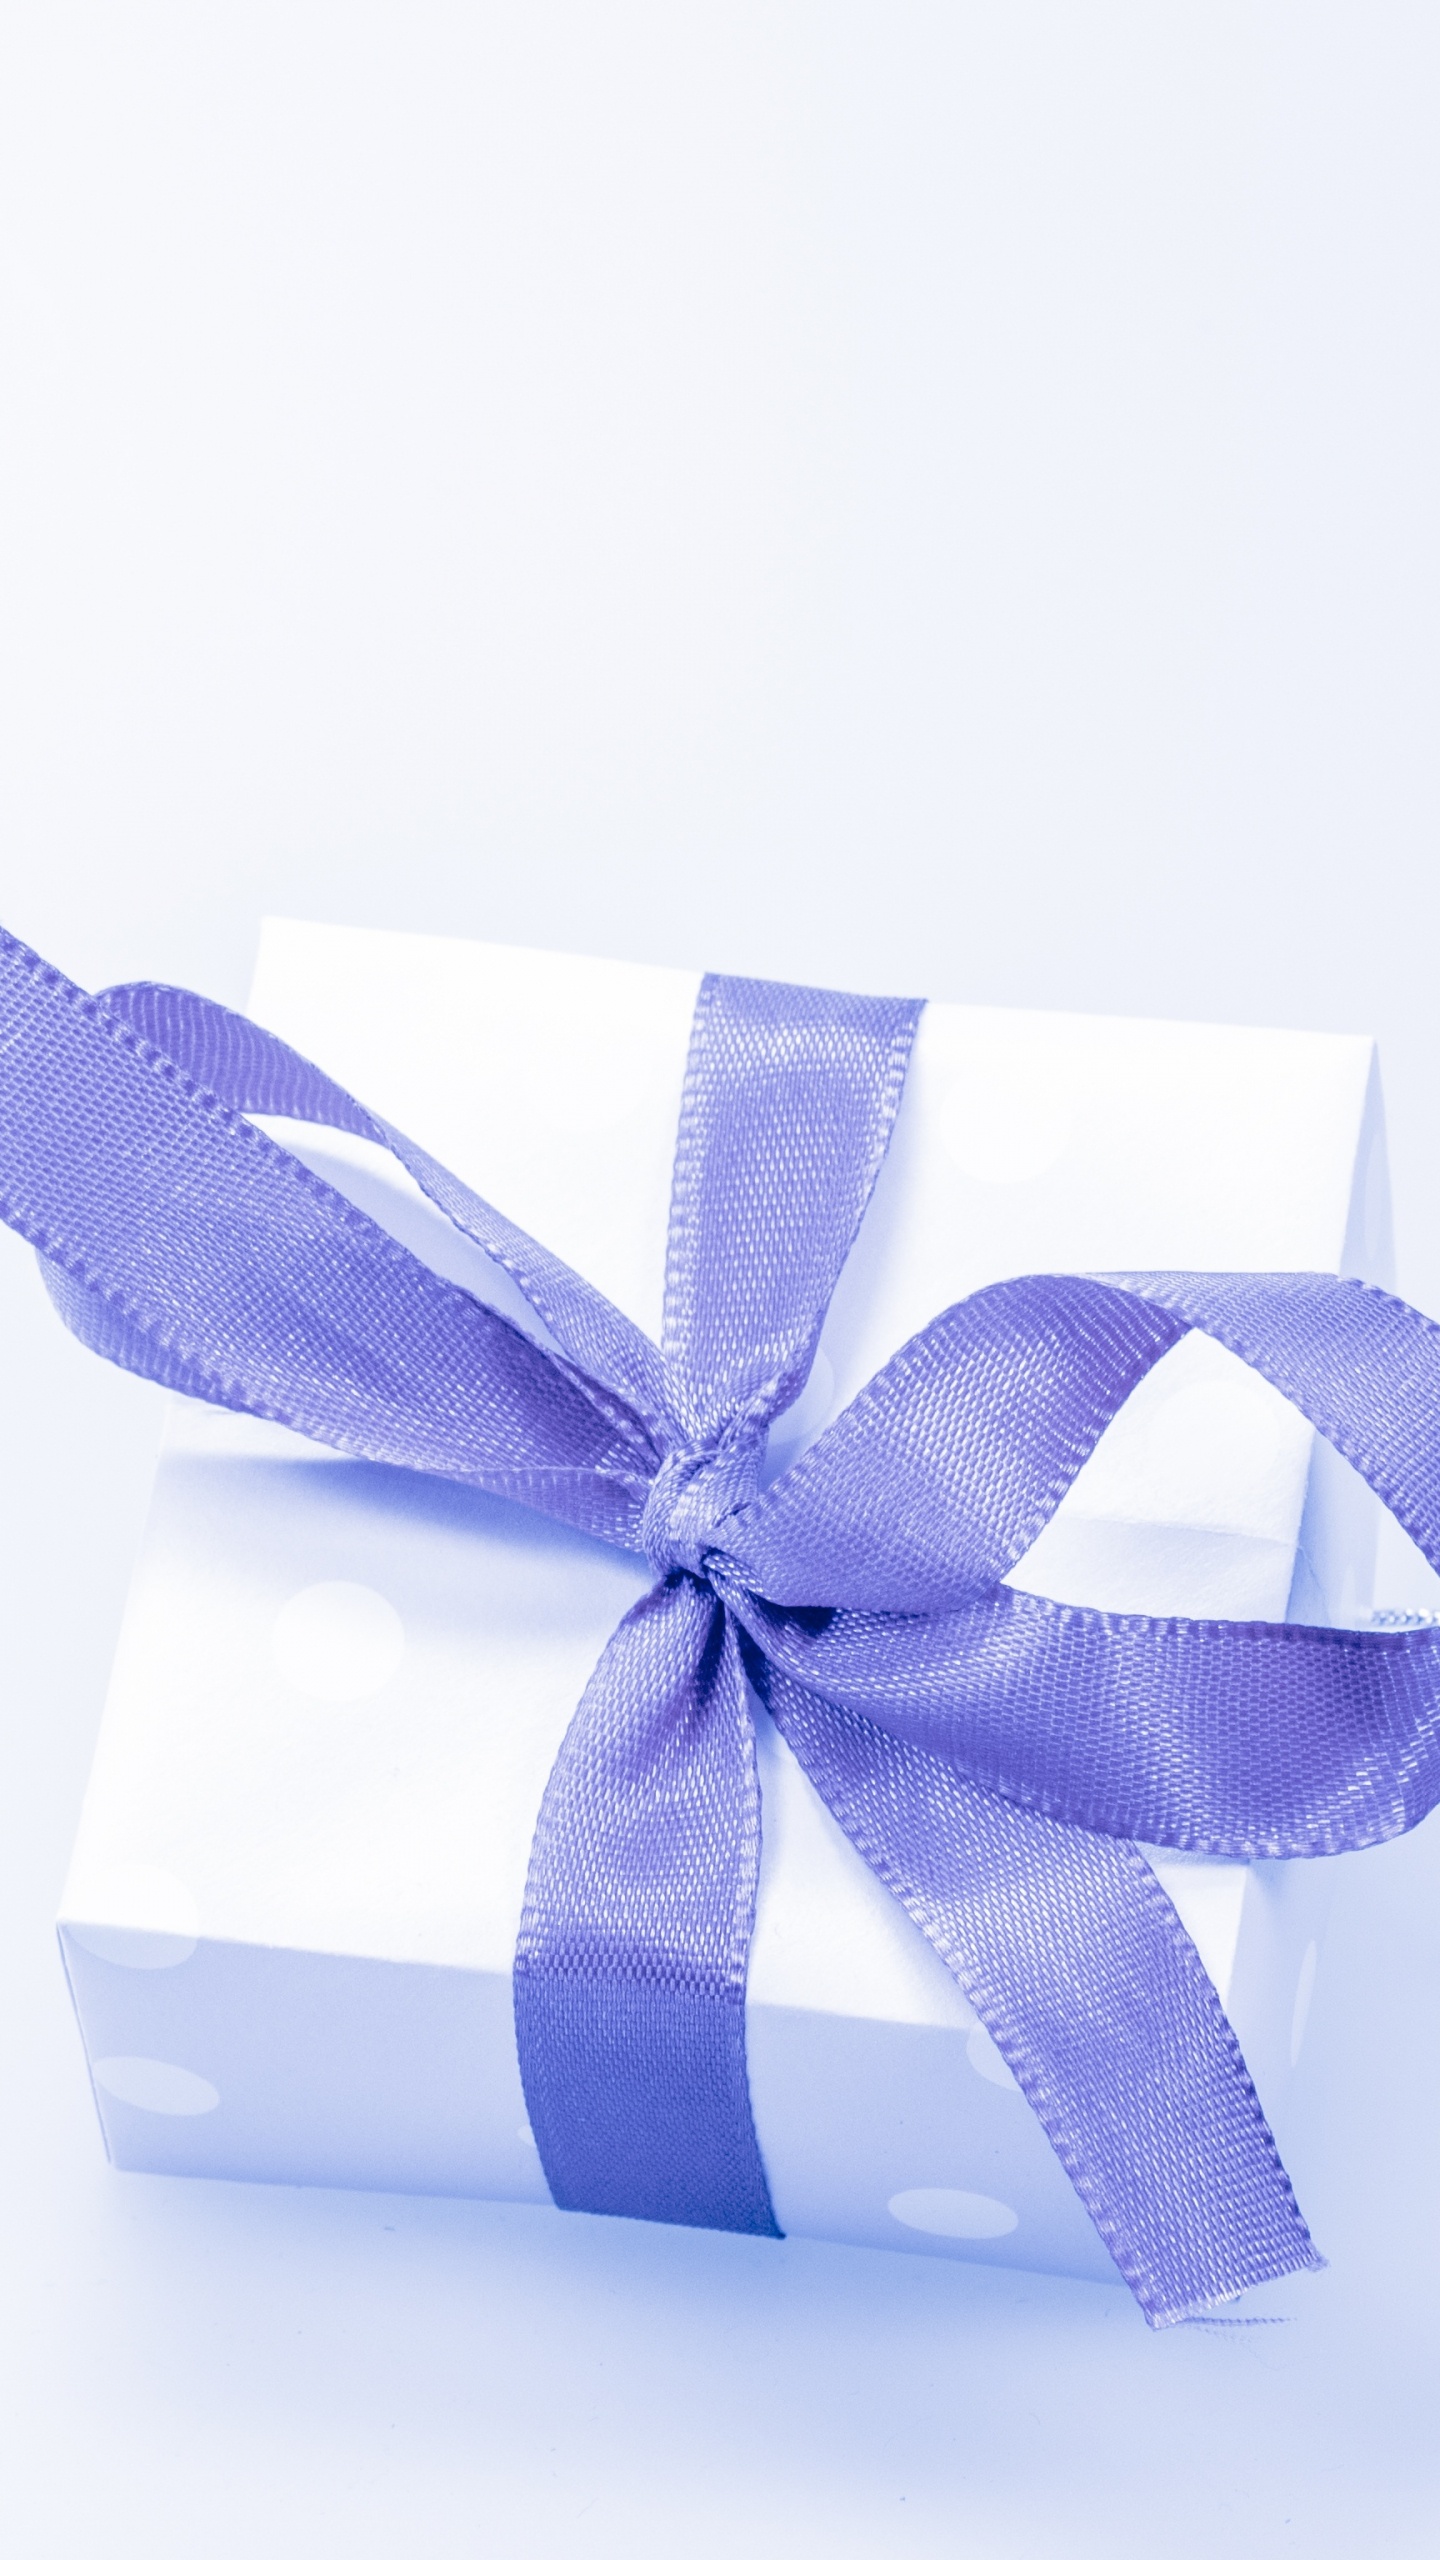 Geschenk, Geschenkkarte, Geschenkpapier, Multifunktionsleiste, Blau. Wallpaper in 1440x2560 Resolution